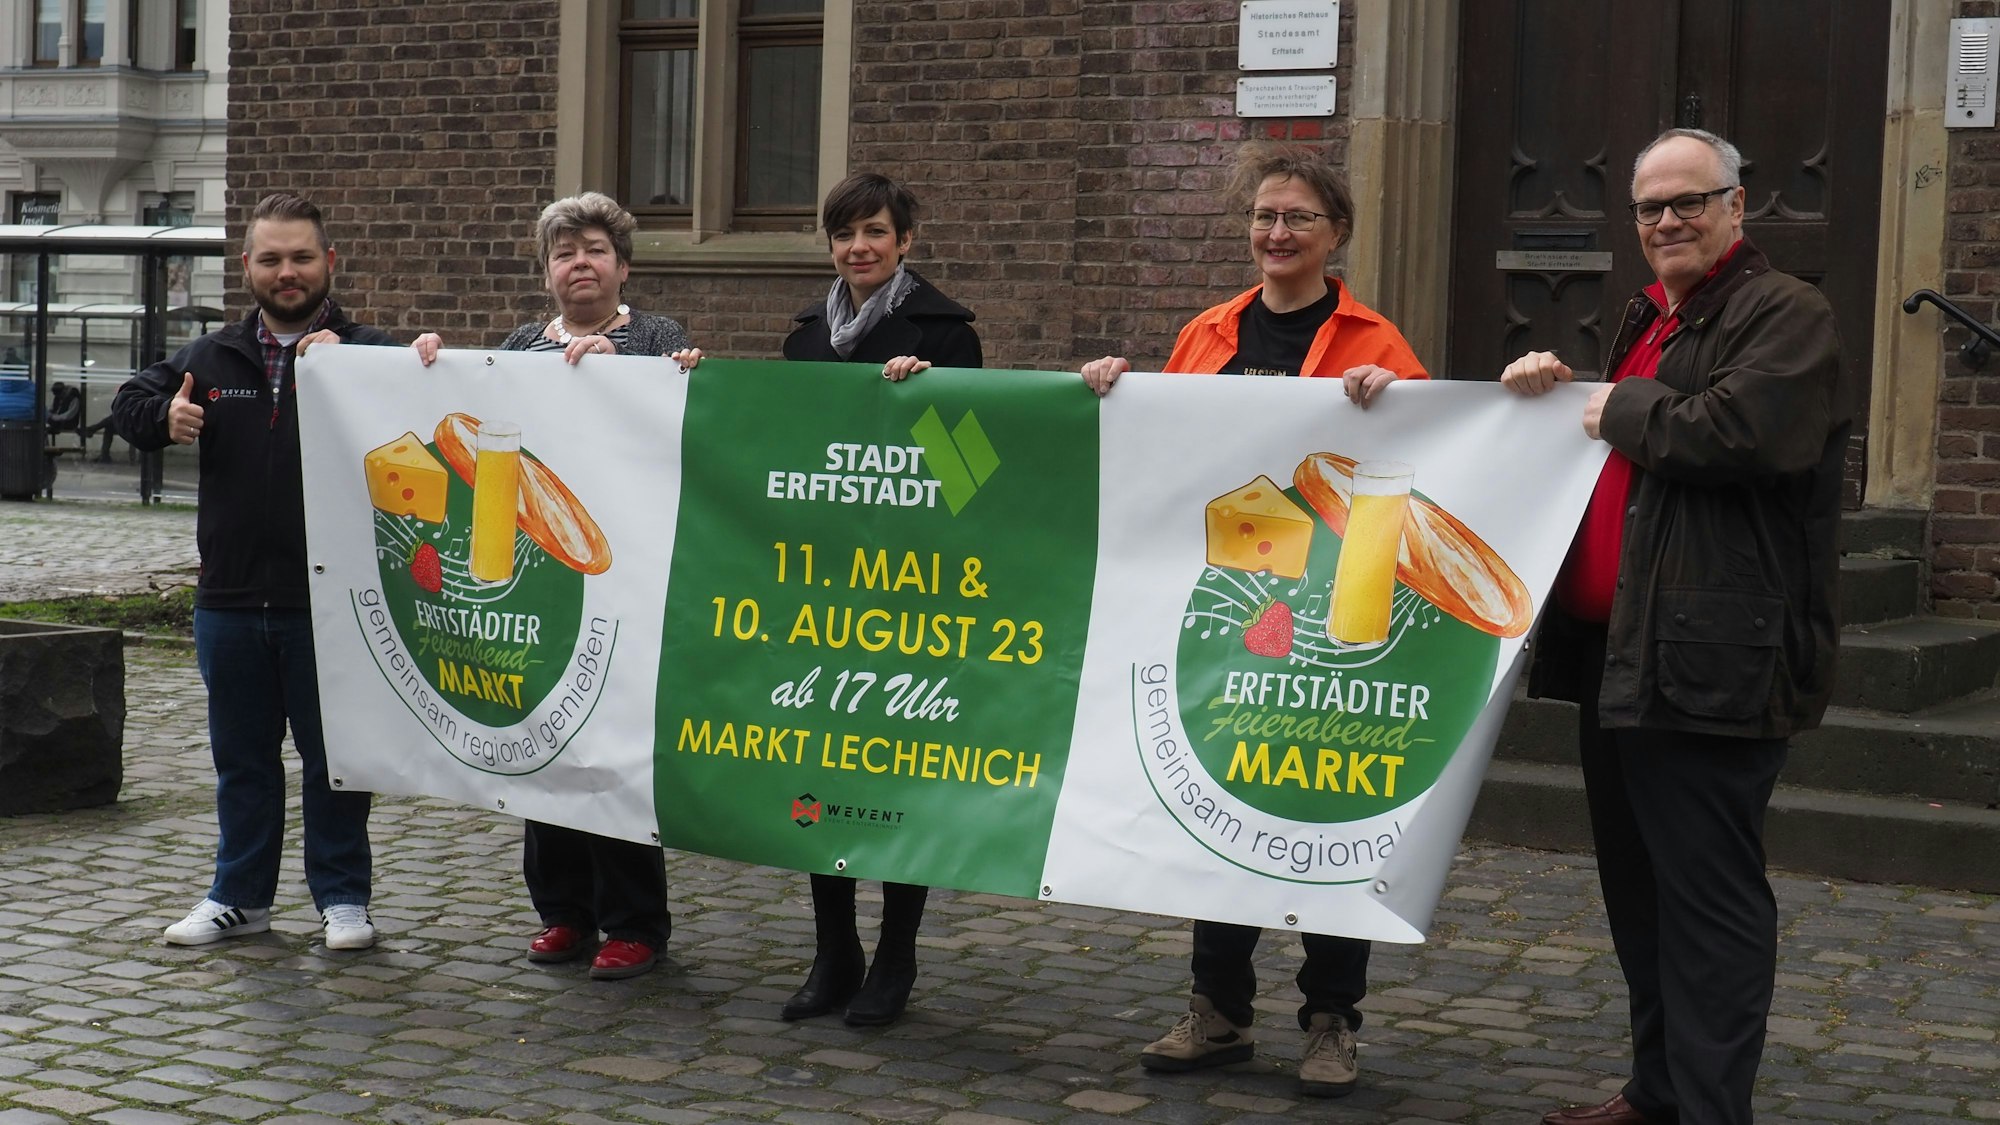 Die zwei Männer und drei Frauen halten das grün-weiße Banner mit dem Logo des geplanten Feierabendmarktes in den Händen.